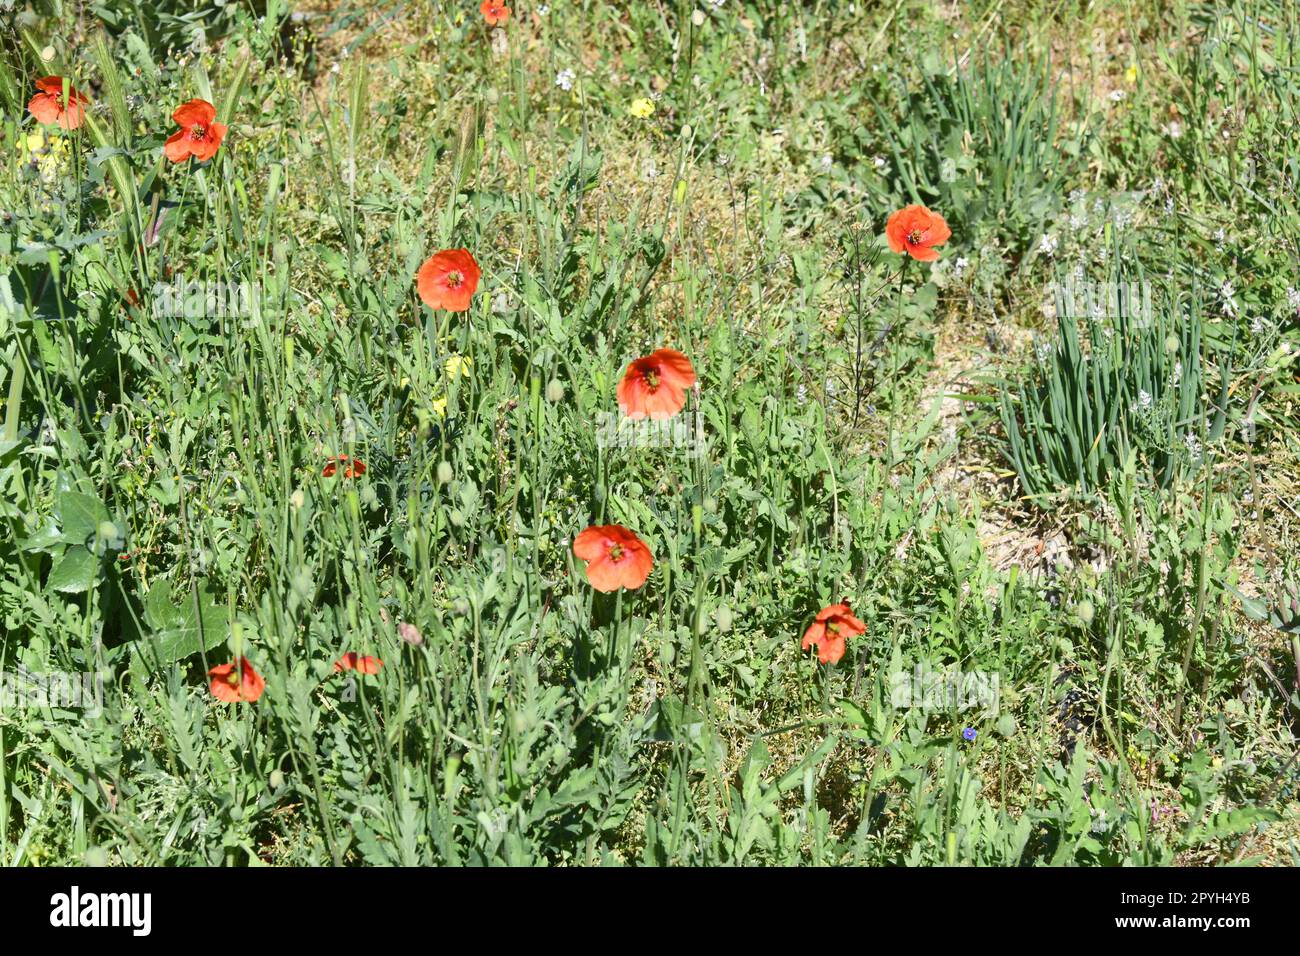 Coquelicots rouges dans une prairie, province d'Alicante, Costa Blanca, Espagne Banque D'Images